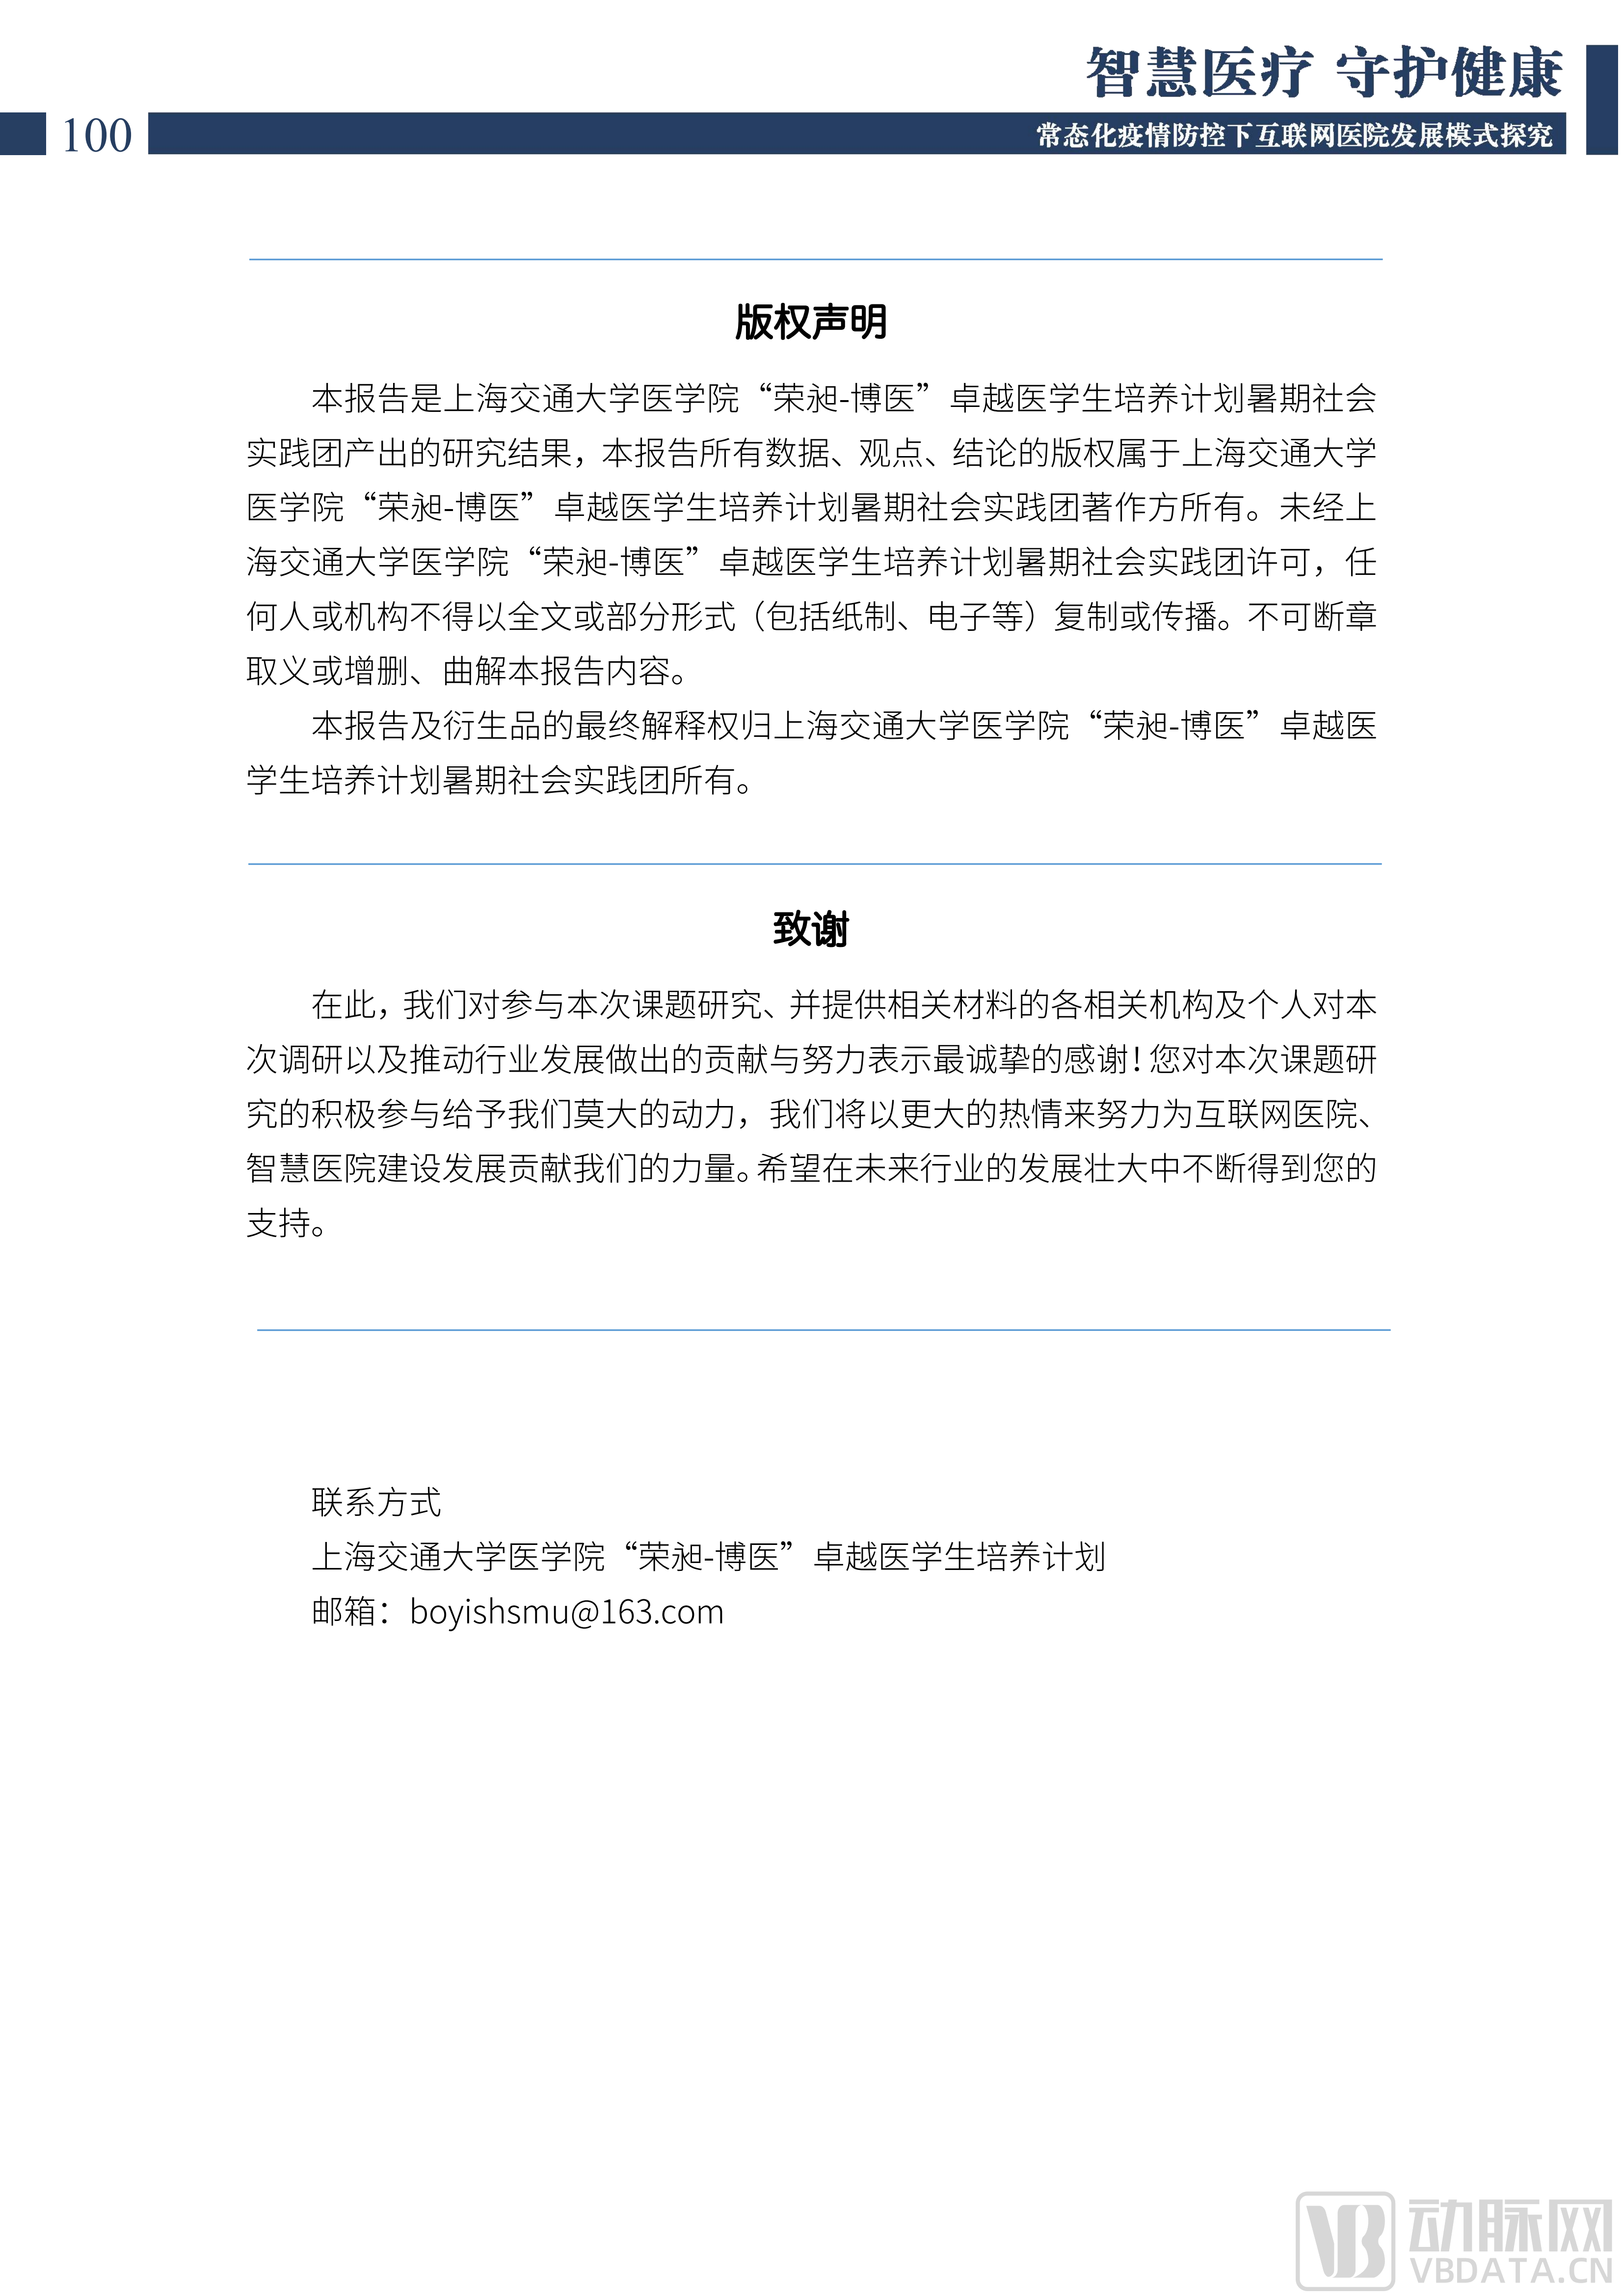 2022中国互联网医院发展调研报告(1)_101.png